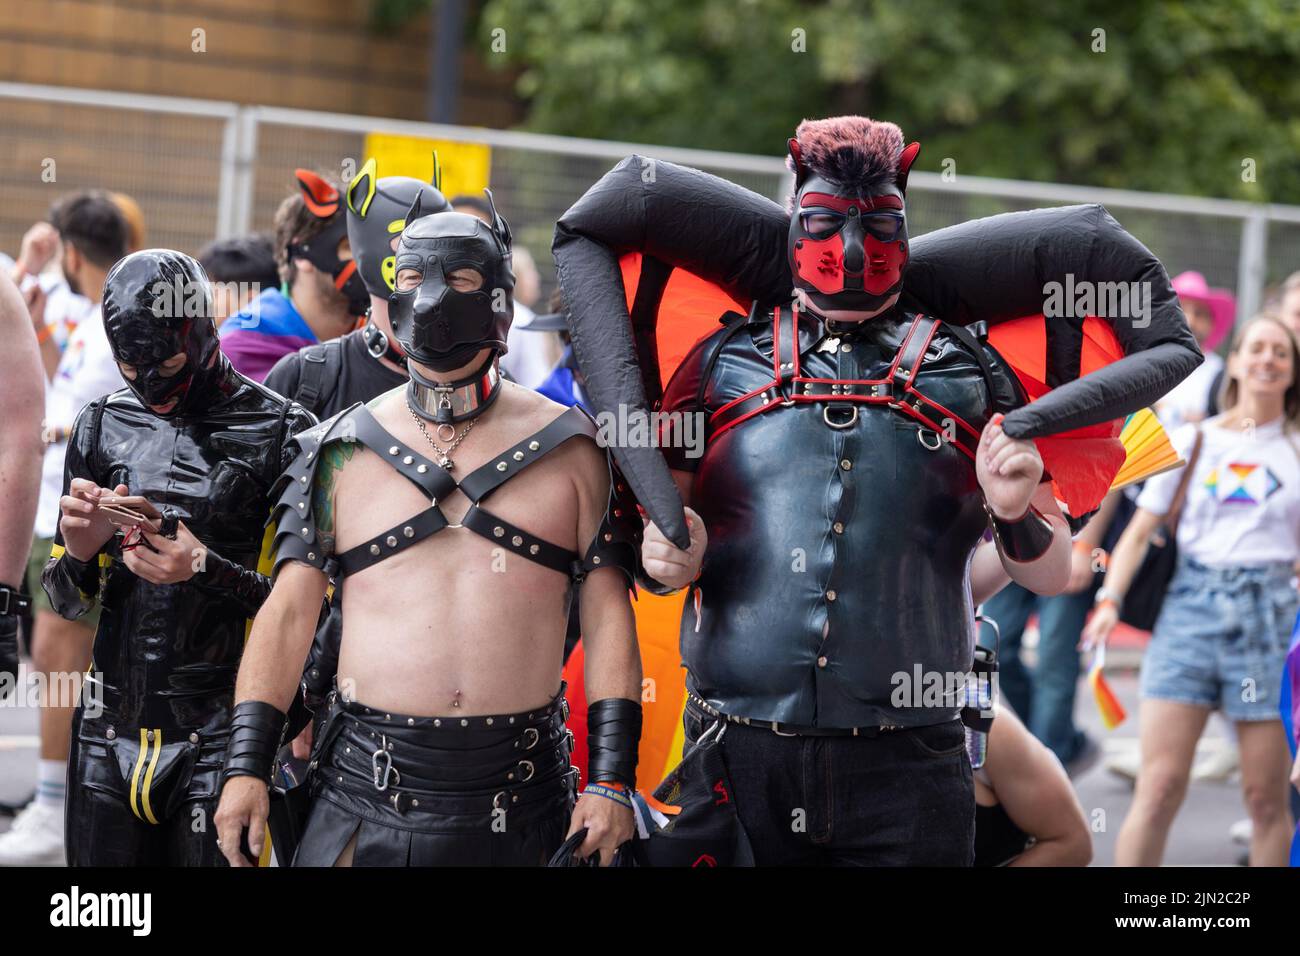 Los hombres se visten con trajes de cuero bondage como parte de London Pride, en Piccadilly. La marcha anual es una celebración para lesbianas, gays, bisexuales, tr Foto de stock